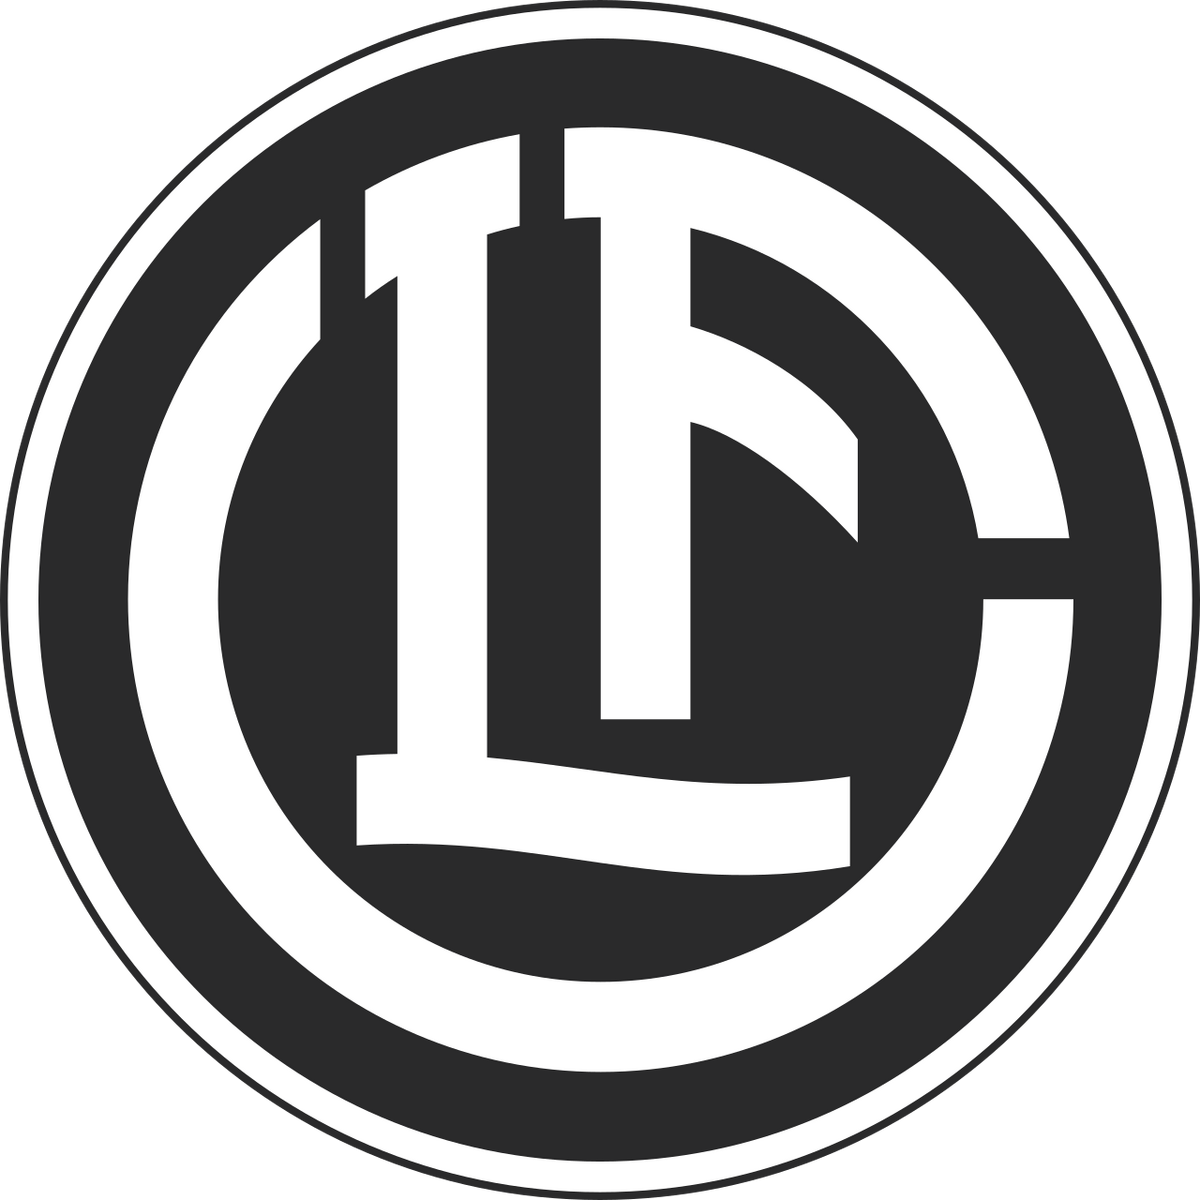 FC Luzern - Wikipedia